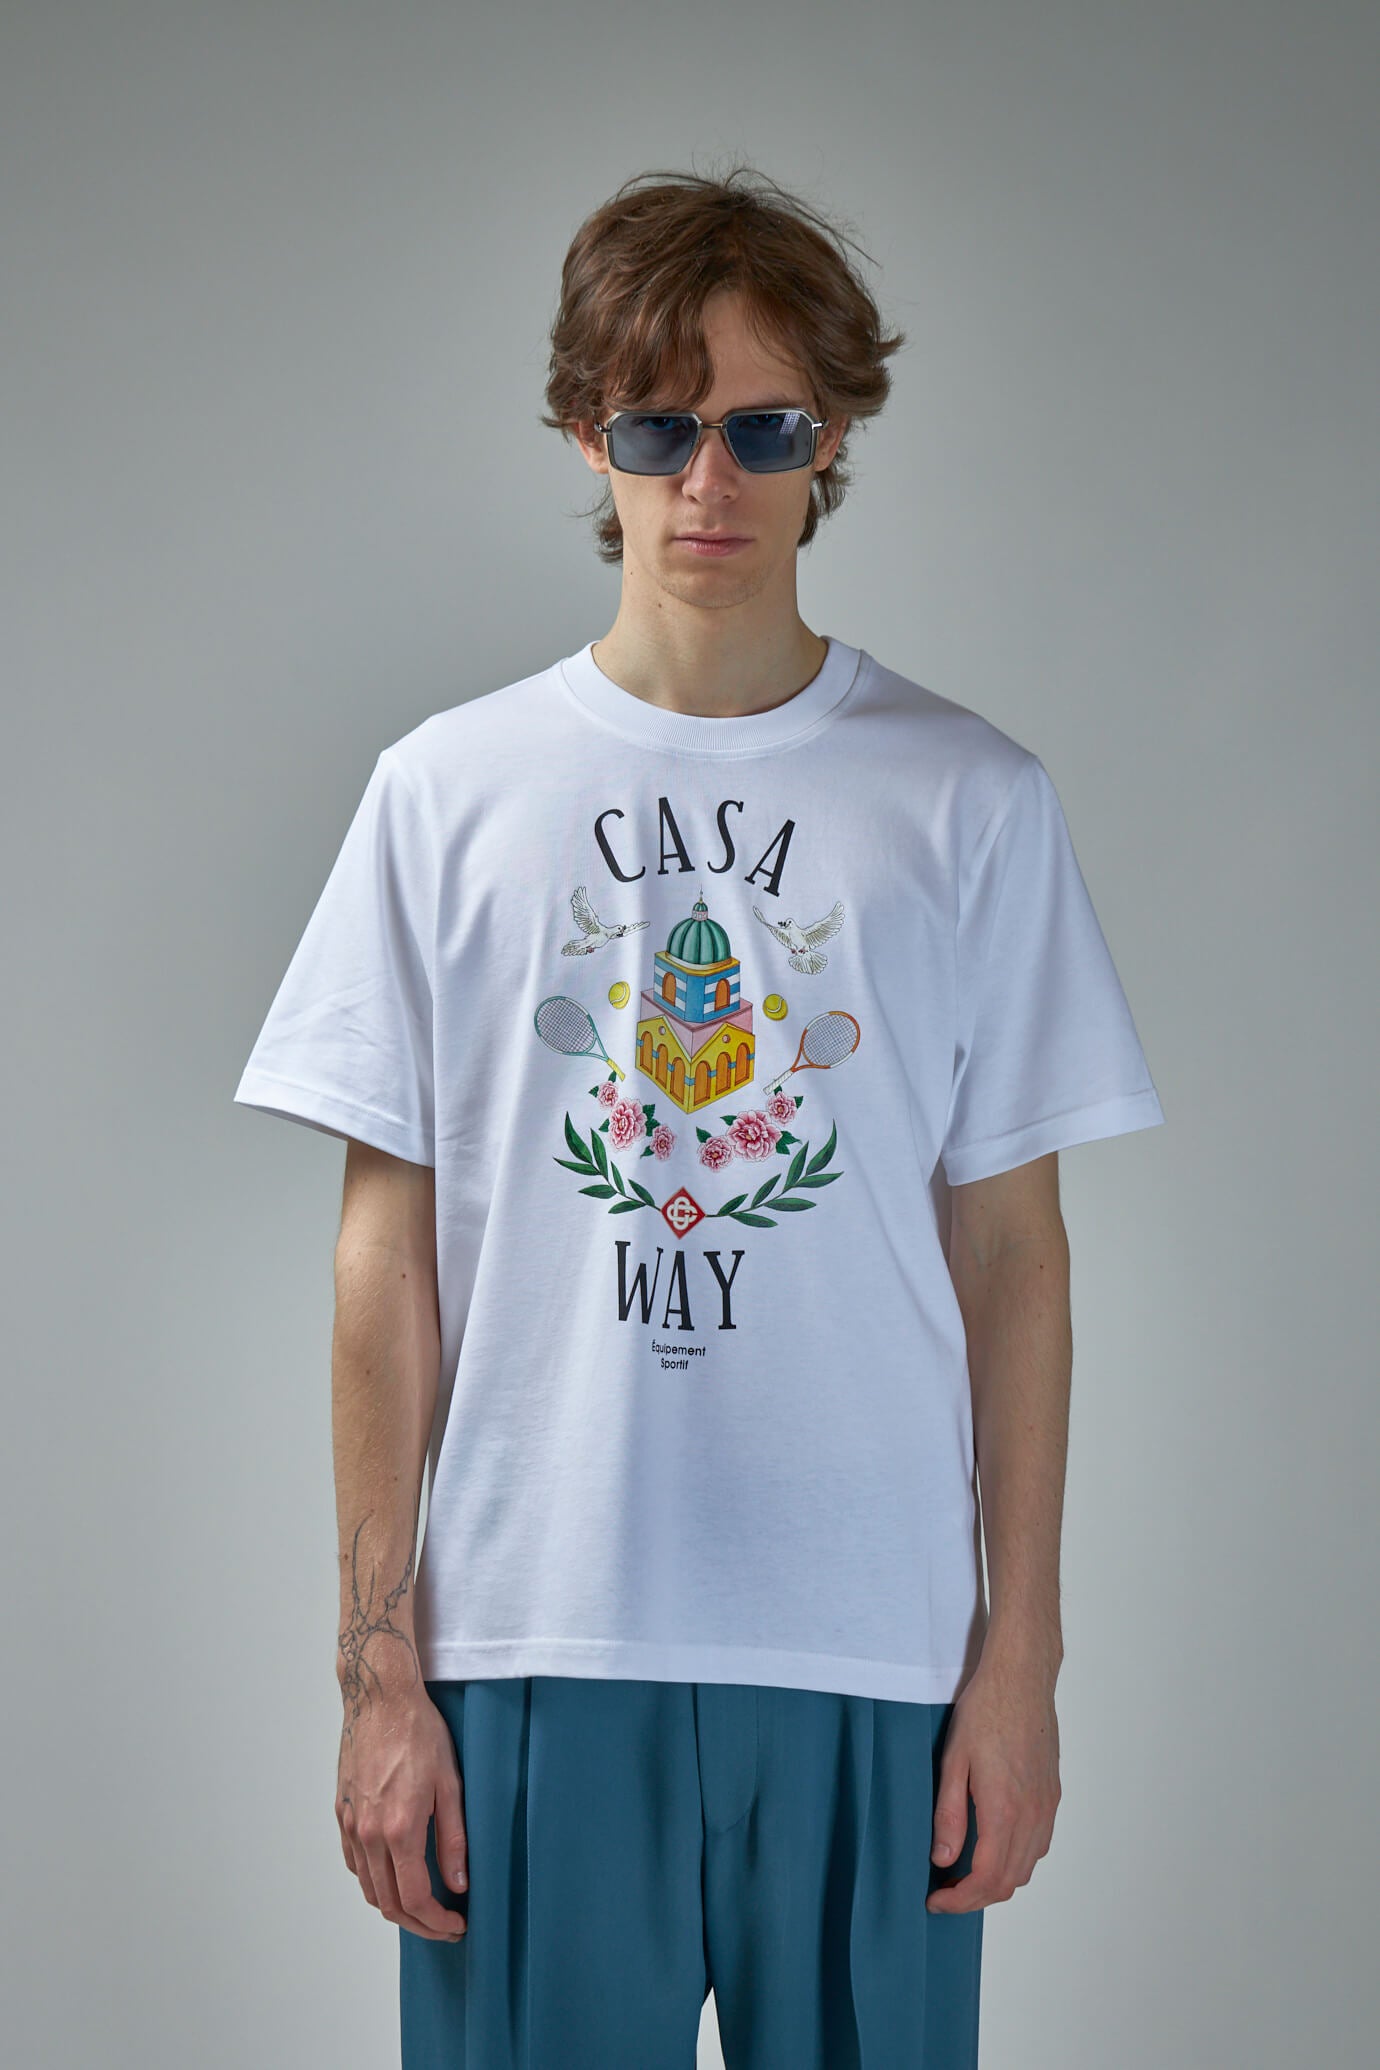 Way Printed T-Shirt Casa Way